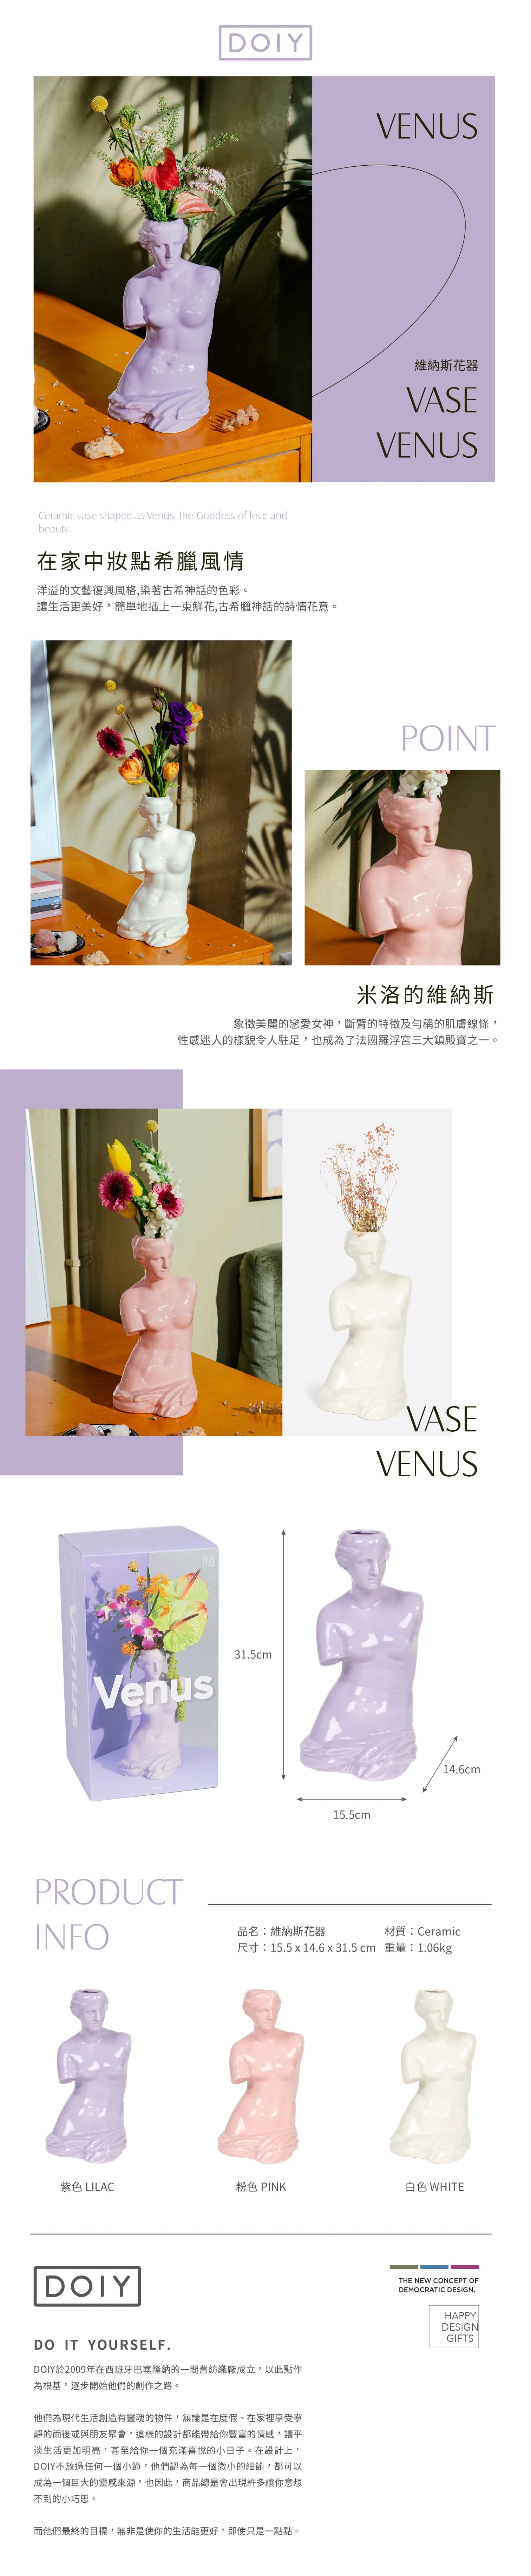 西班牙 DOIY Venus Vase White 維納斯花器 白色